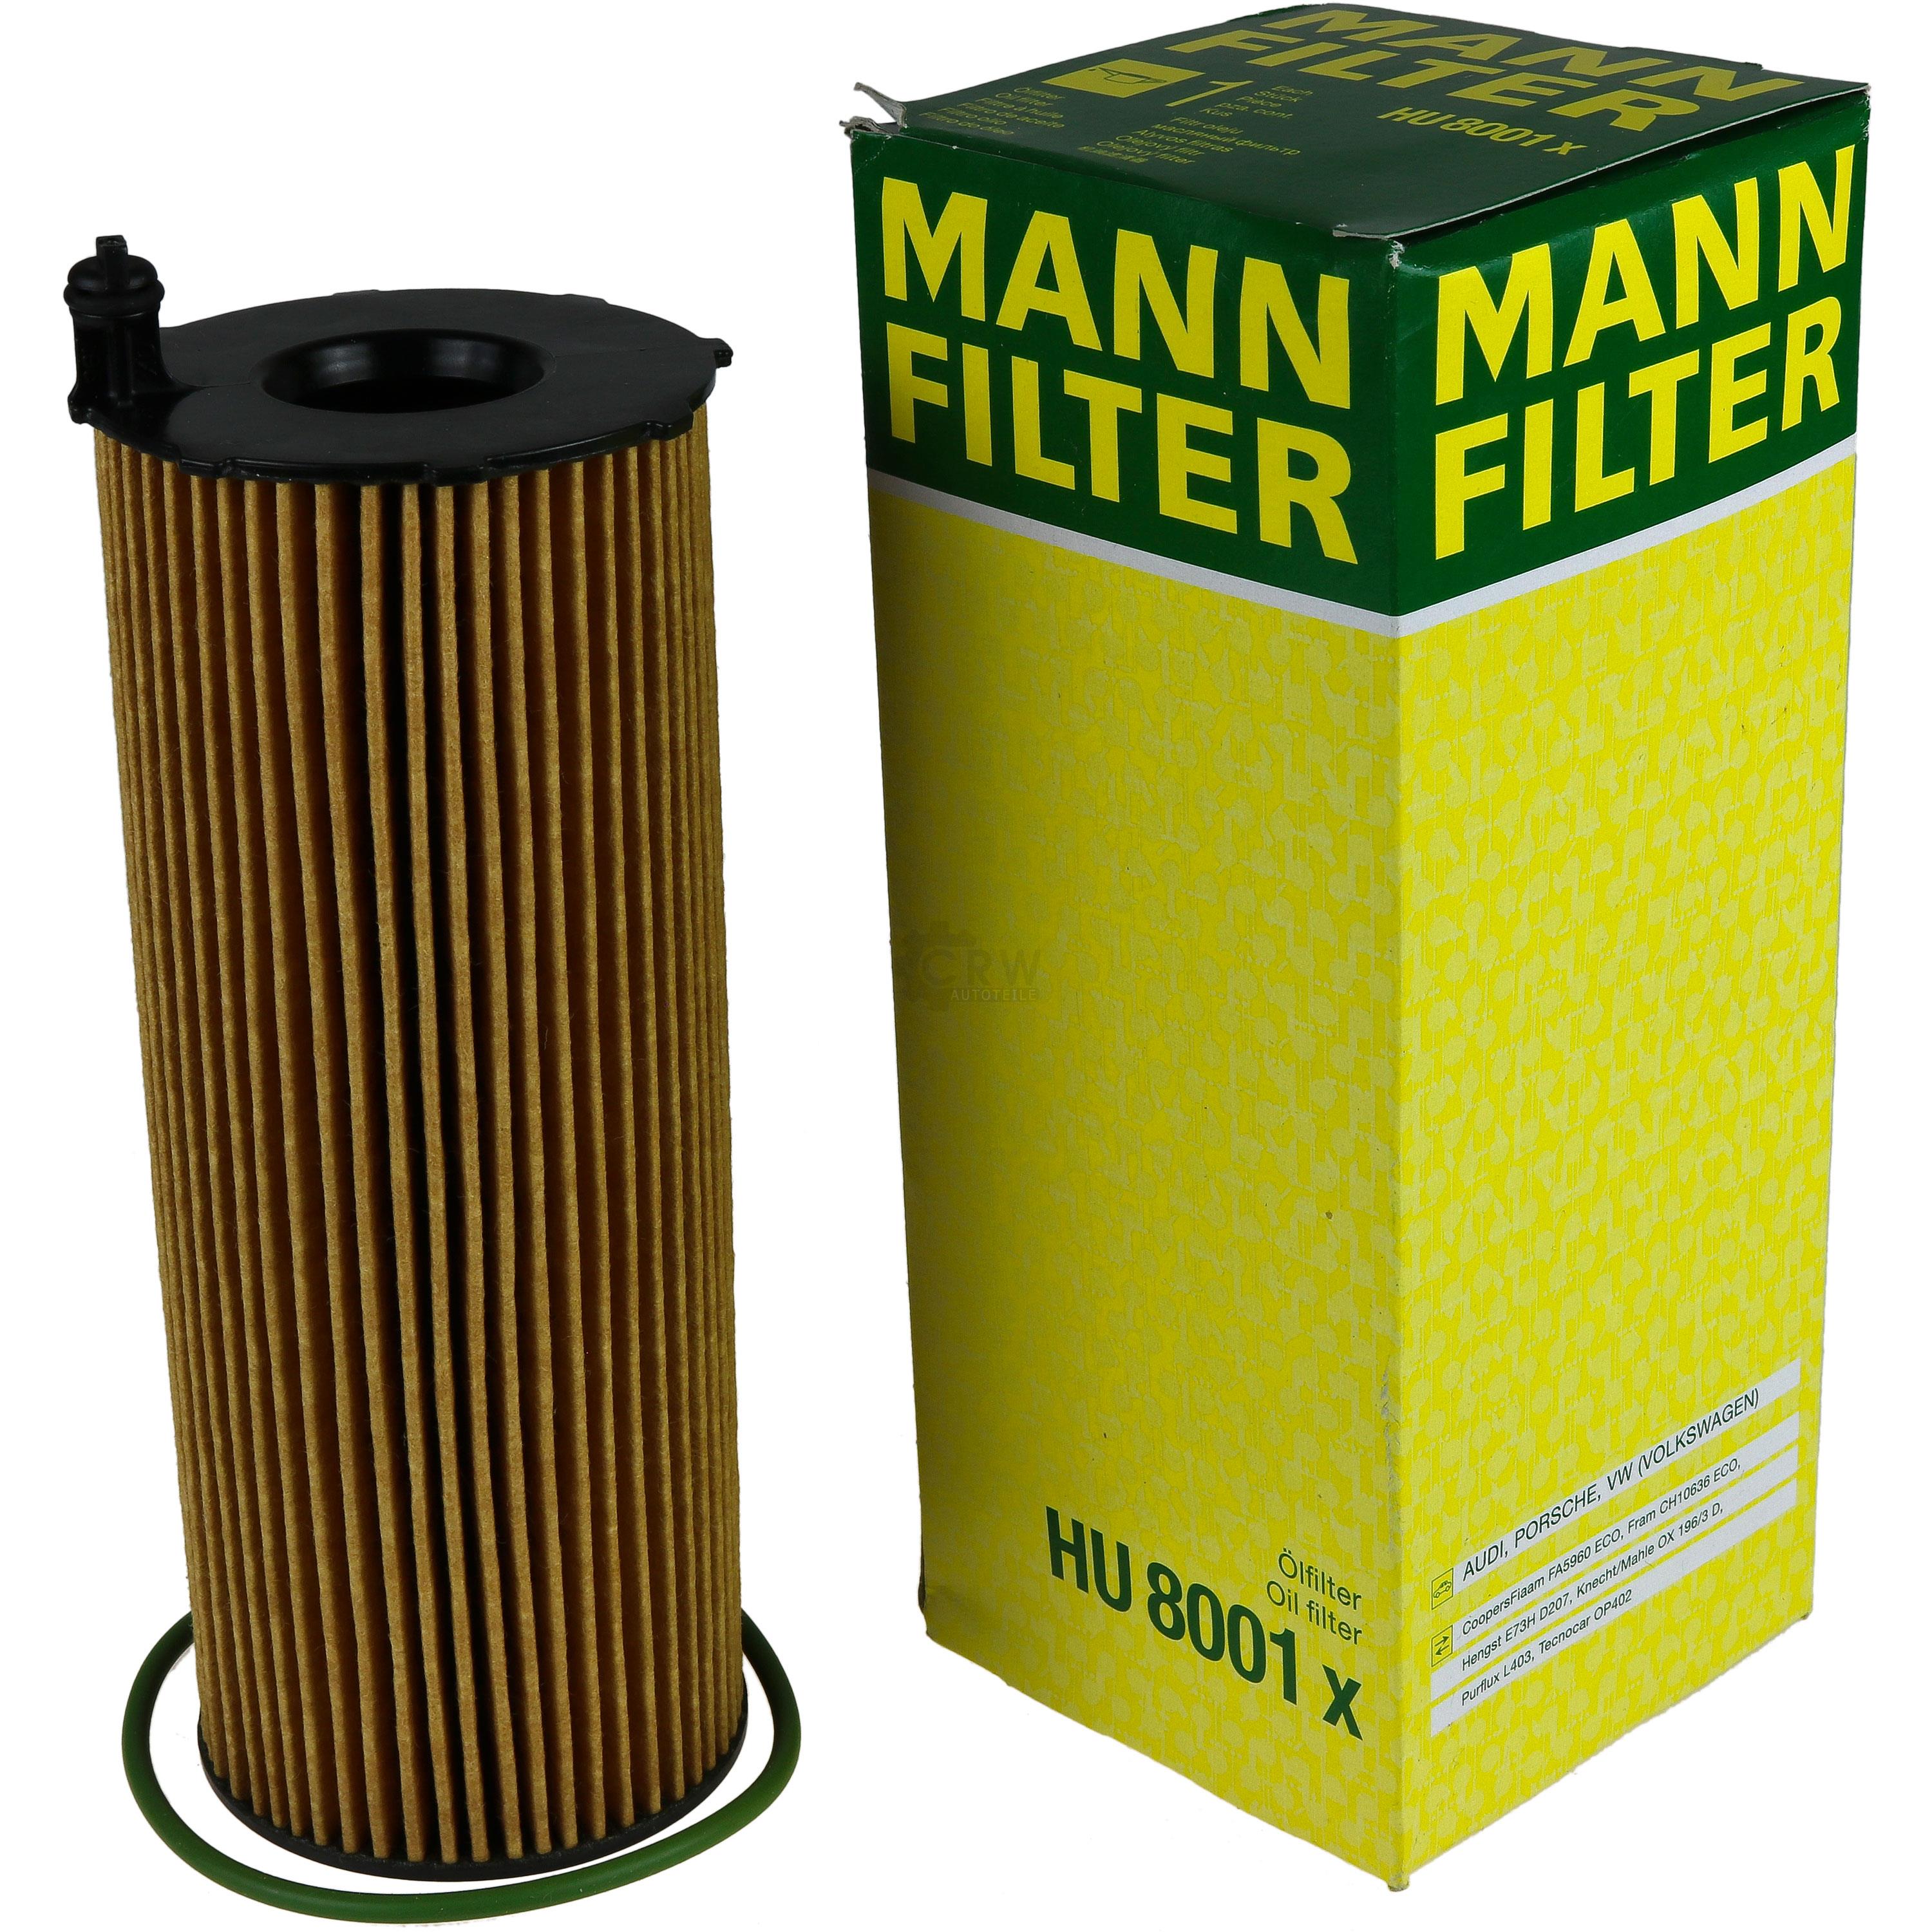 MANN-FILTER Ölfilter HU 8001 x Oil Filter